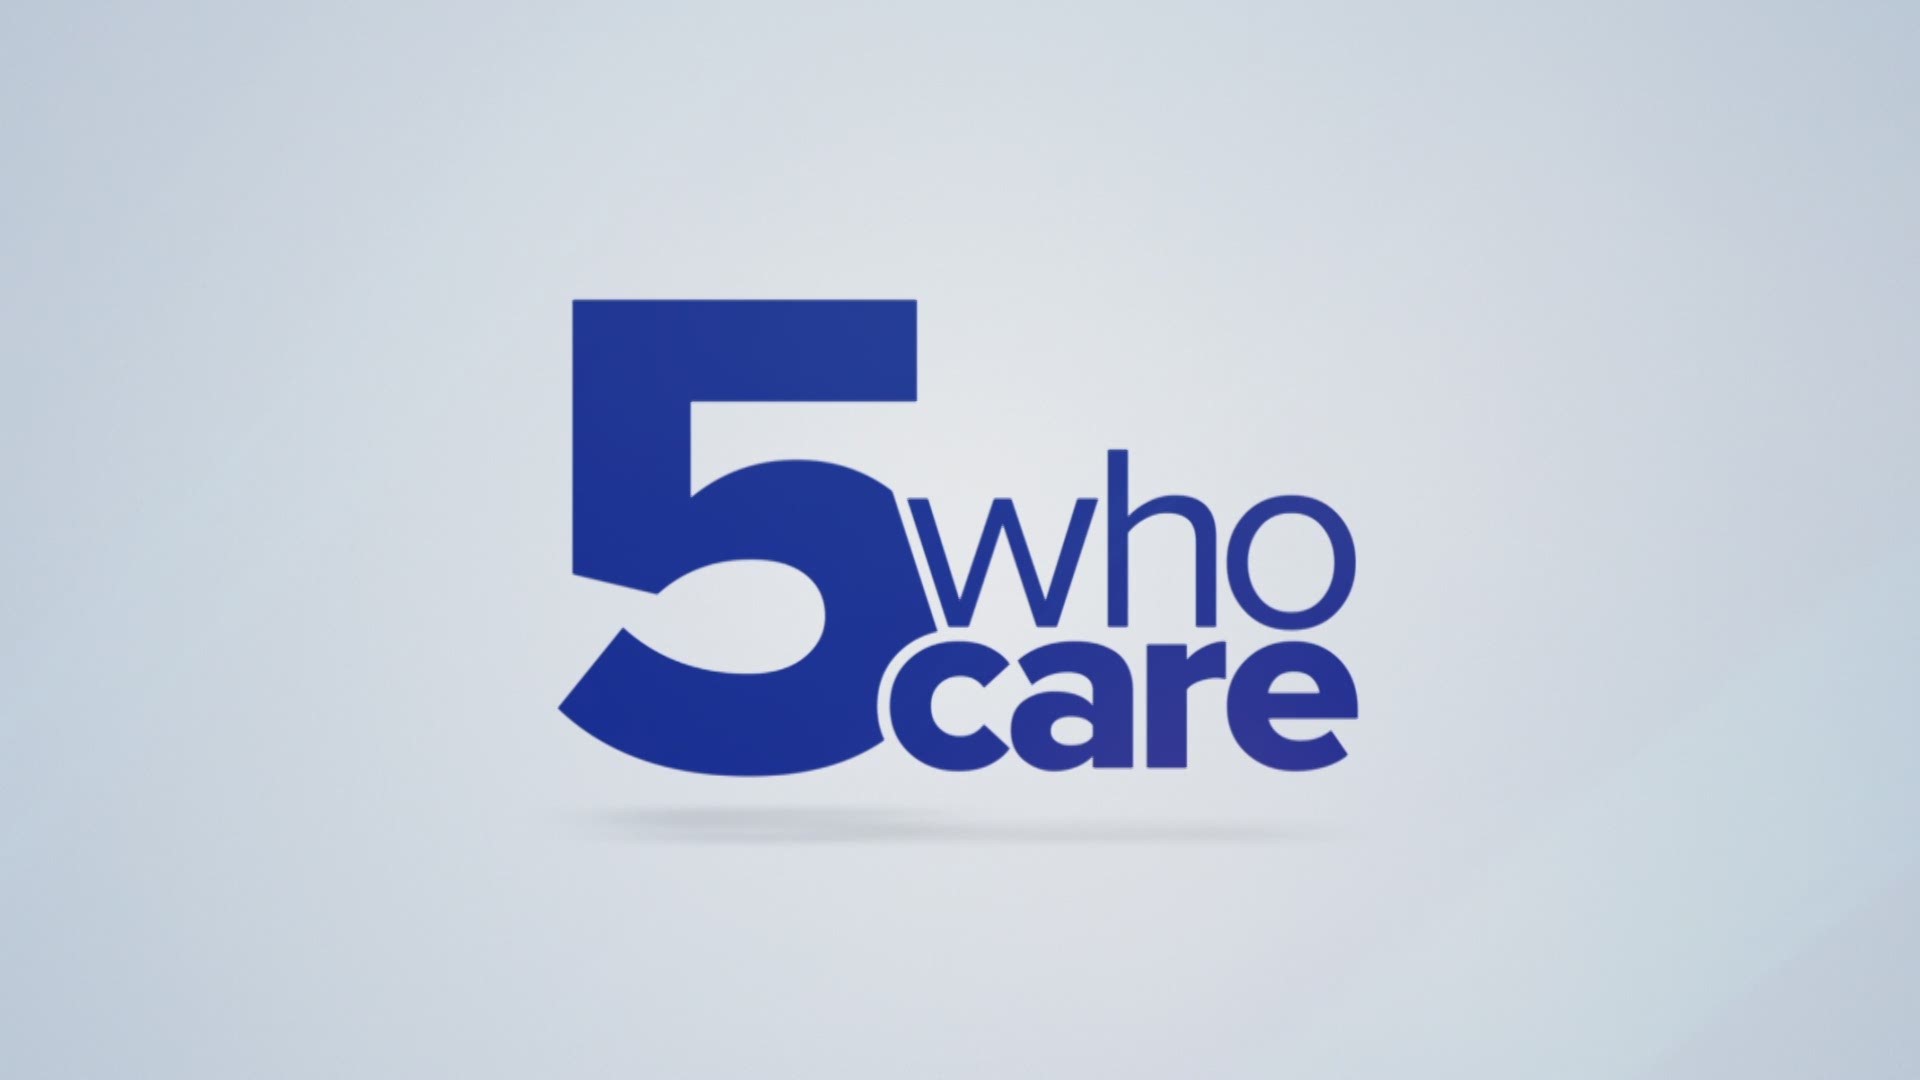 Meet Five Who Care winner Emerson Guerra.